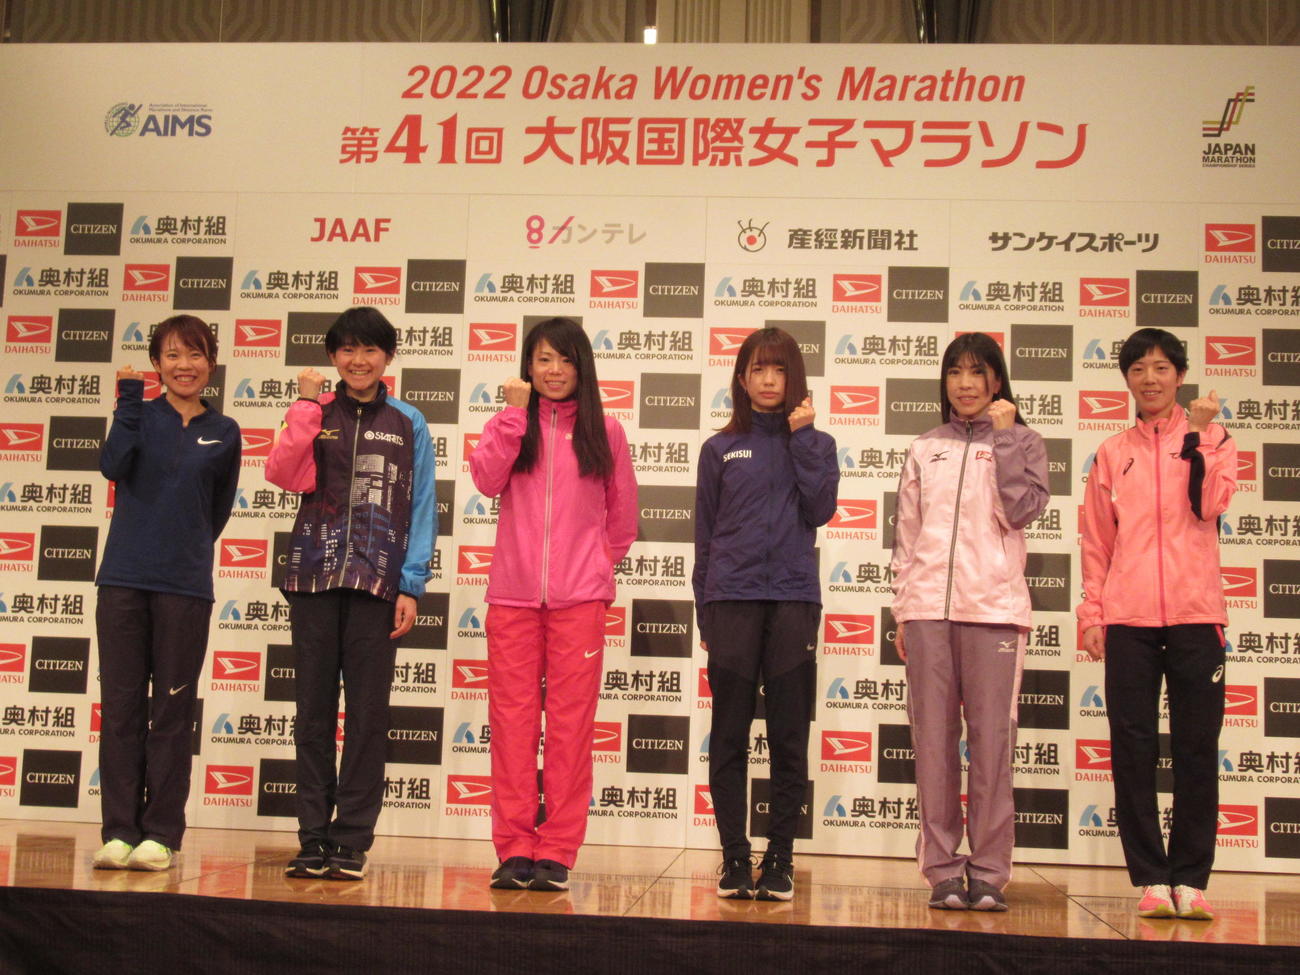 大阪国際女子マラソン前々日会見に臨んだ左から萩原、上杉、松田、佐藤、阿部、松下